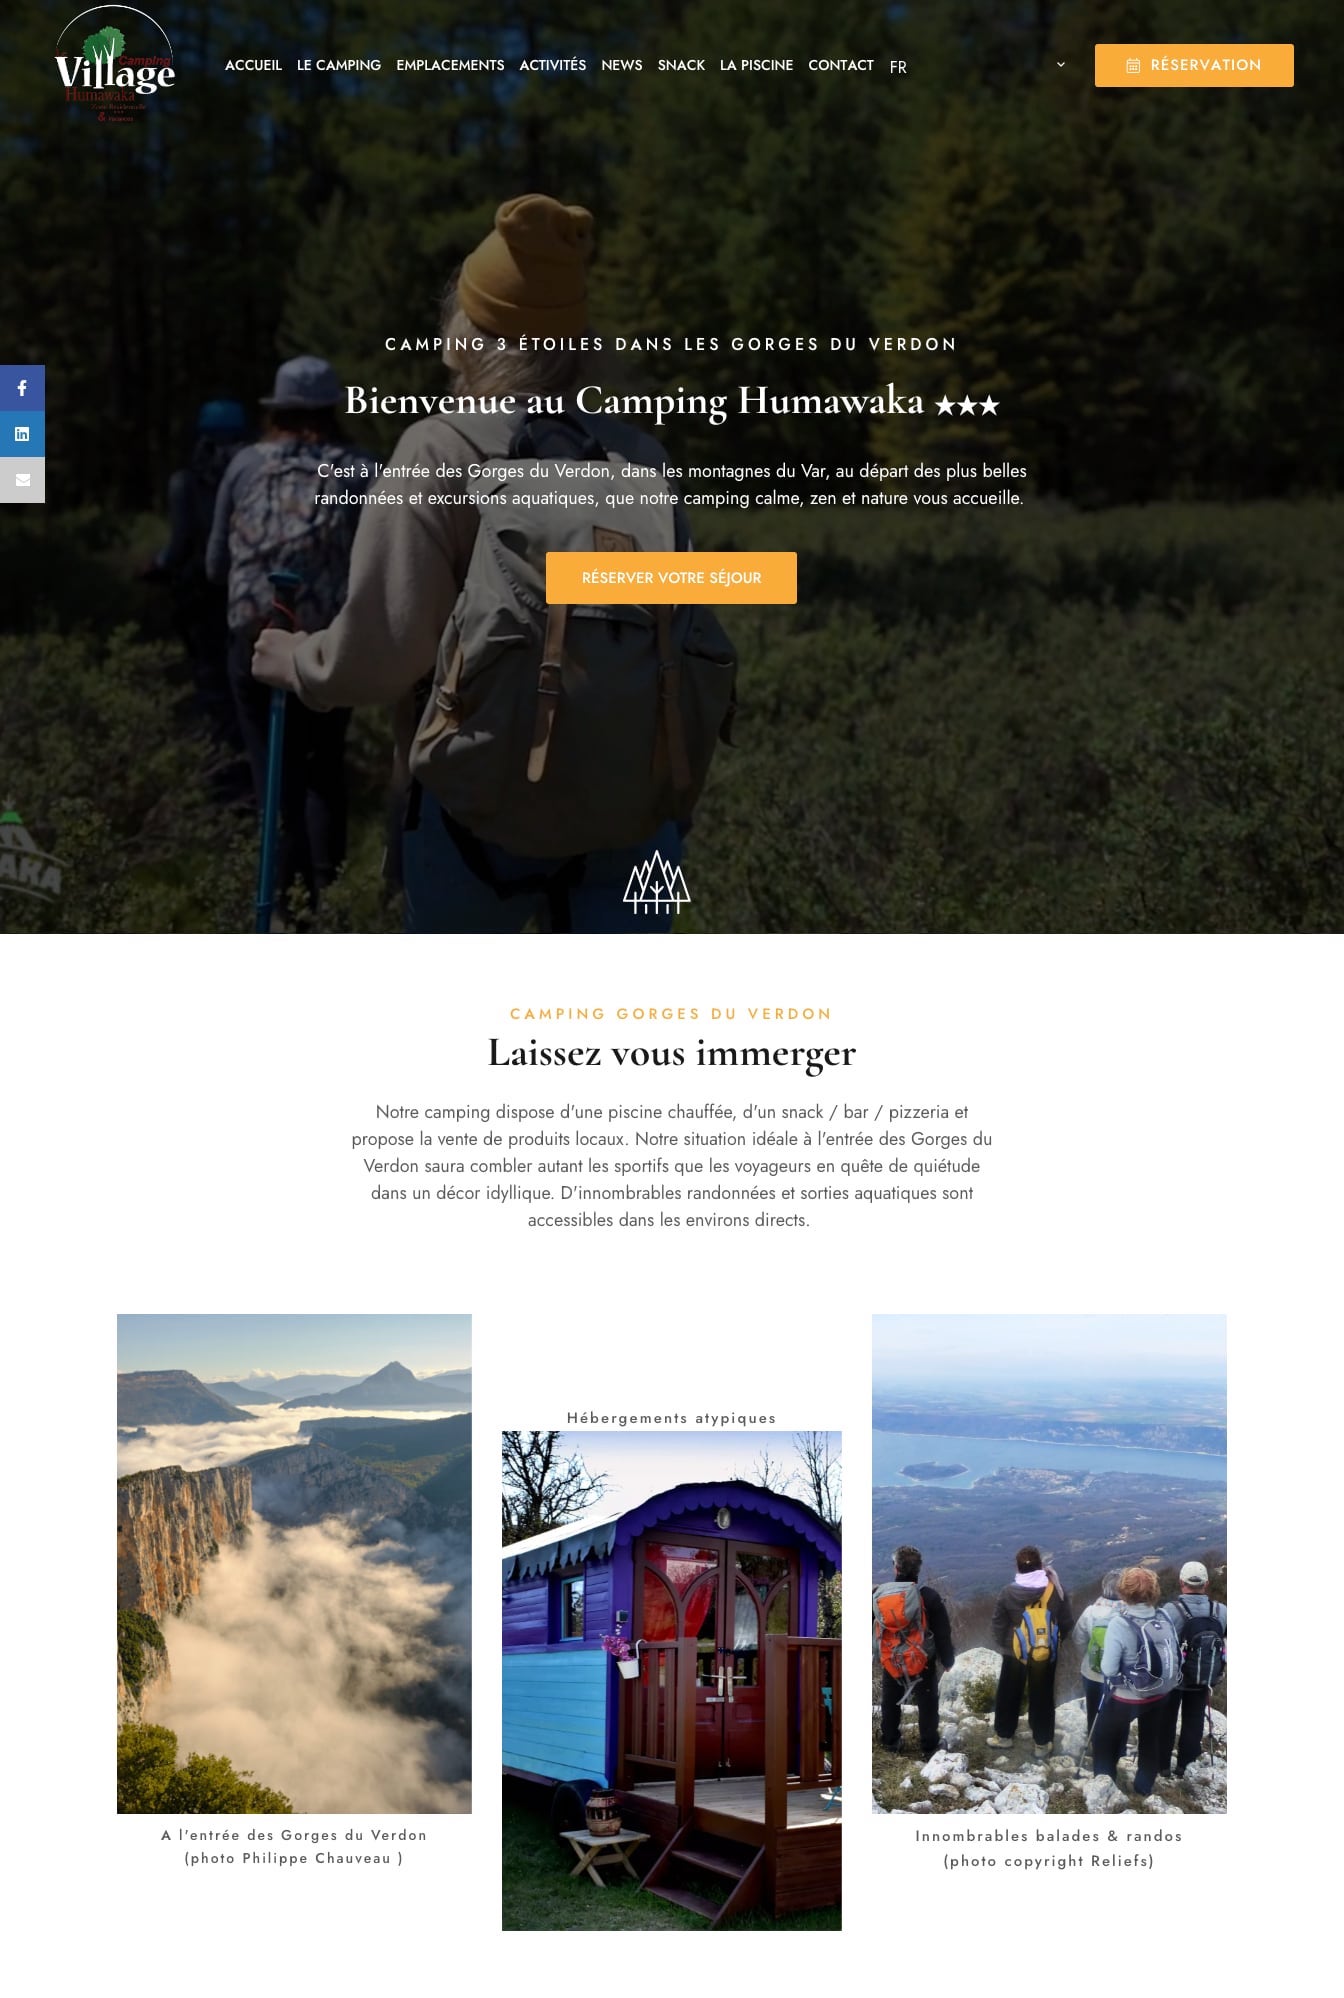 Website design for a nature campsite